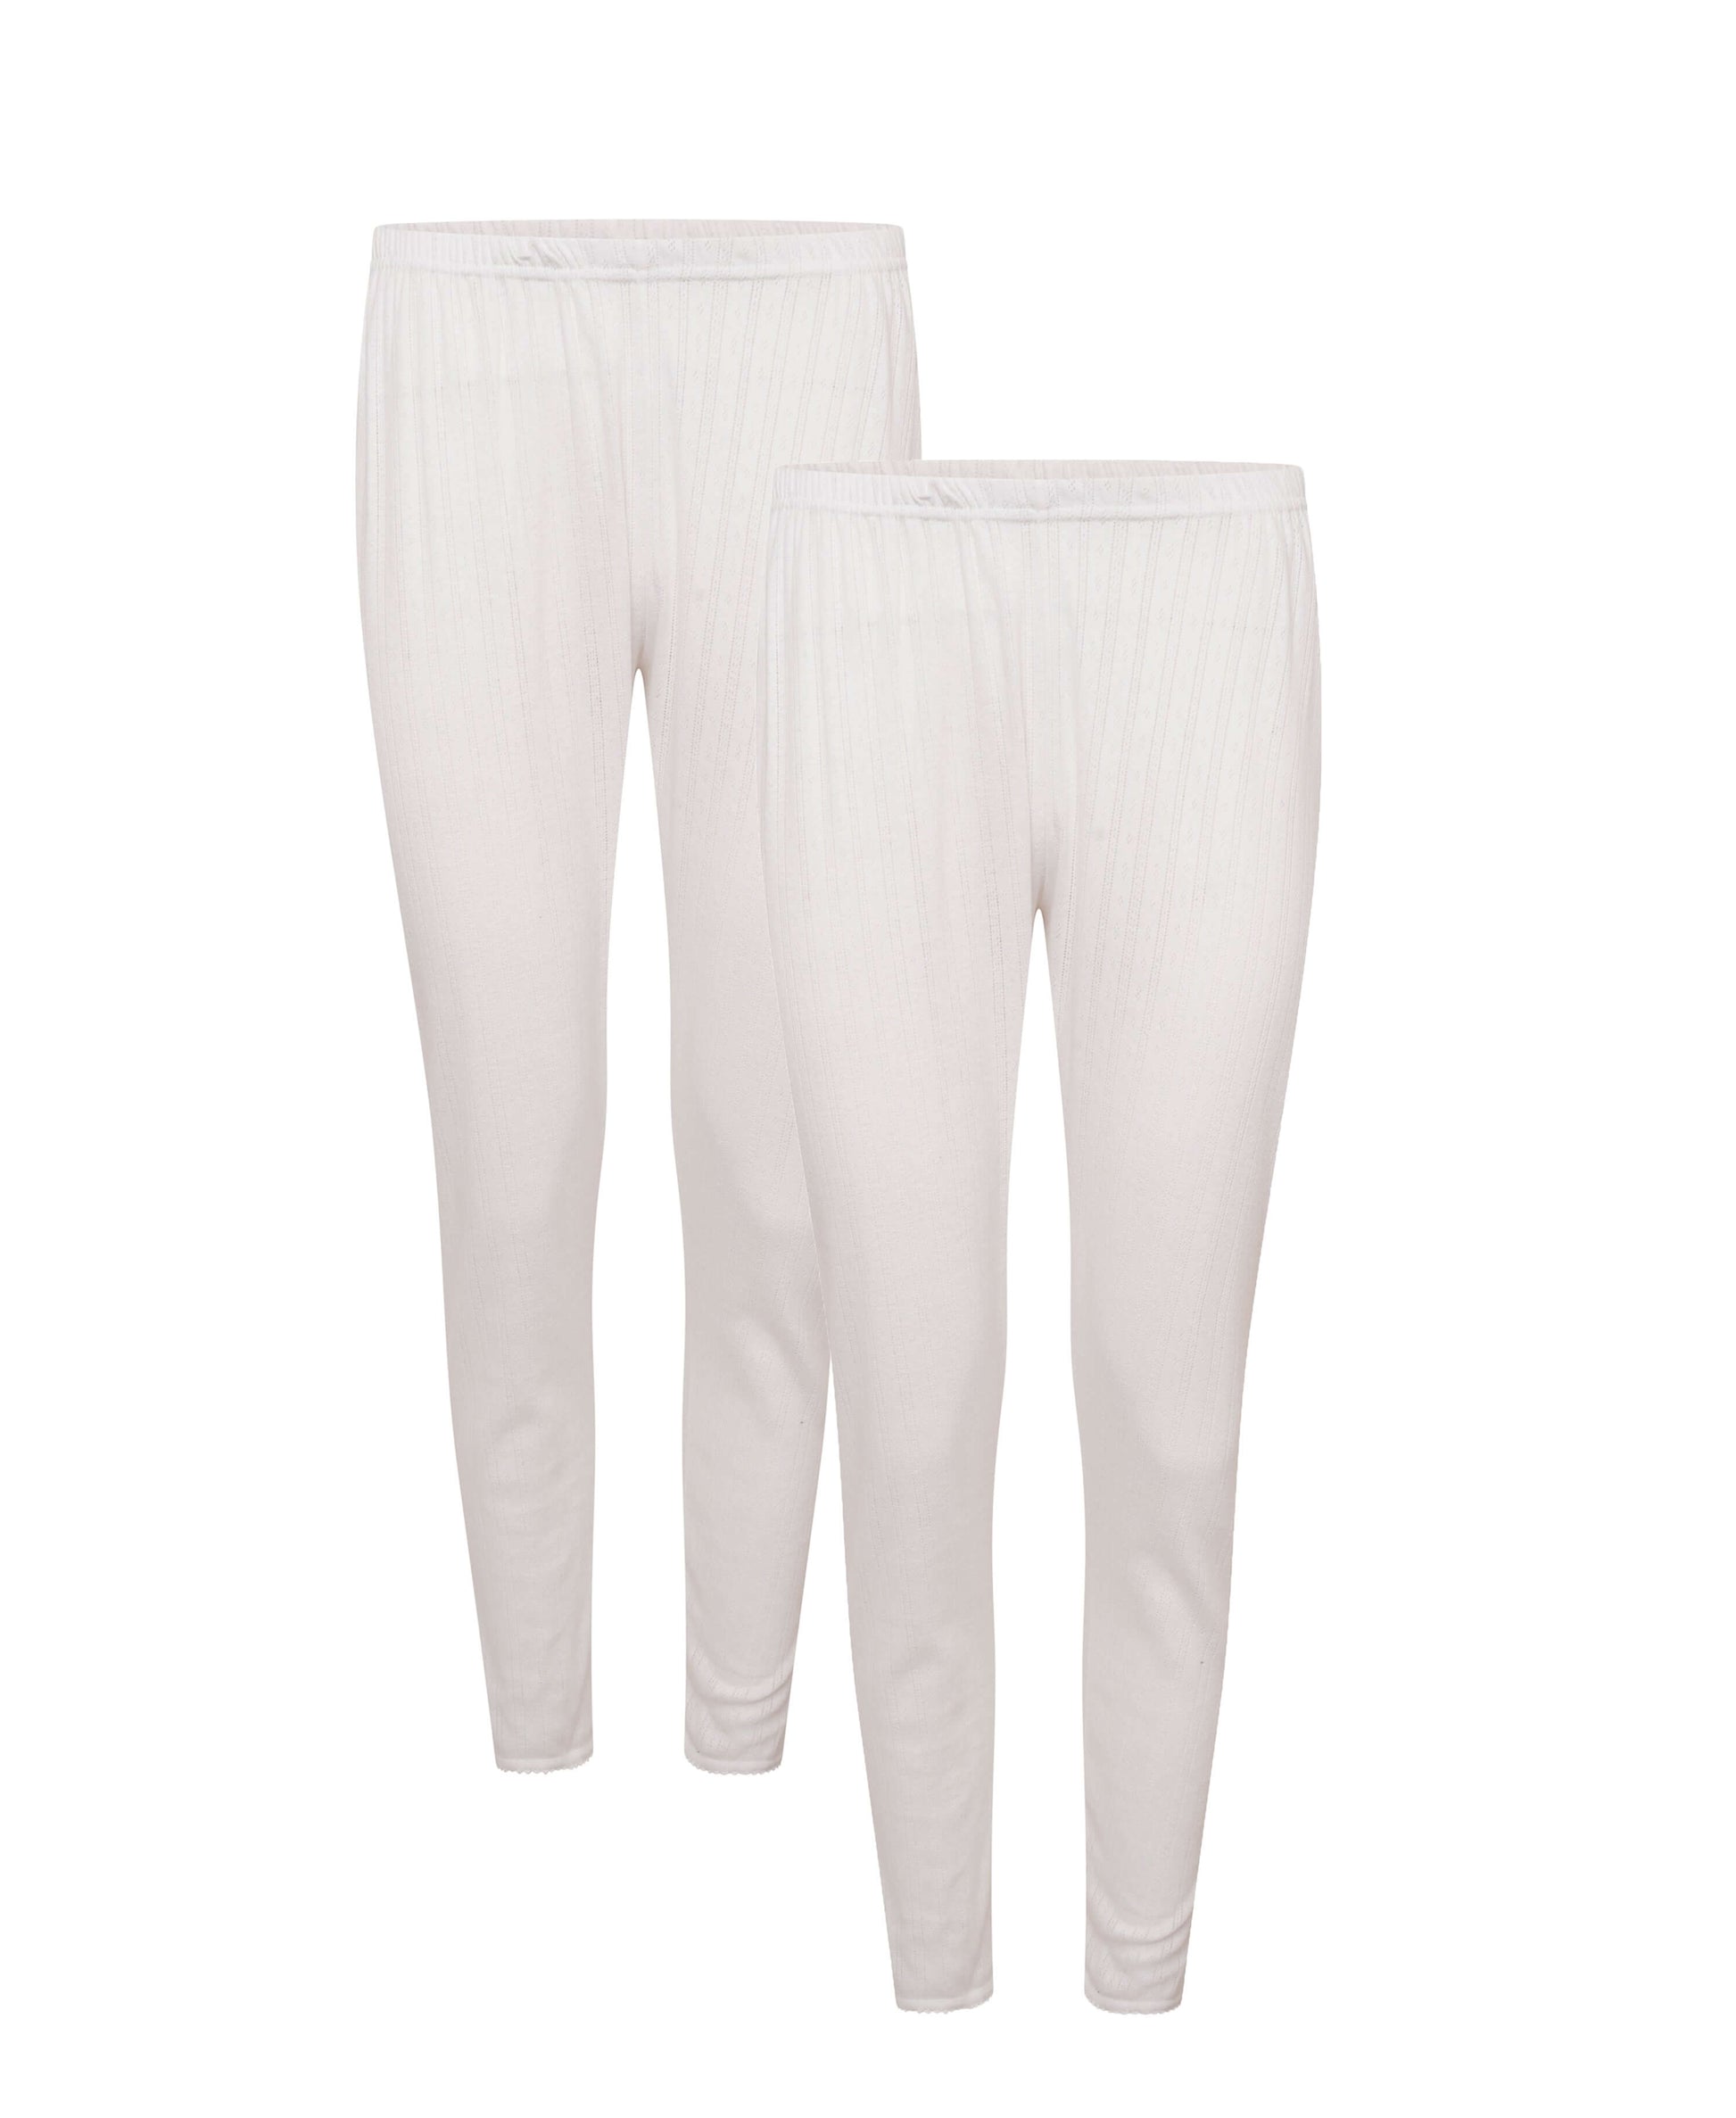 Heatwave® Pack Of 2 Women's Thermal Pants Long Janes, Ladies Warm